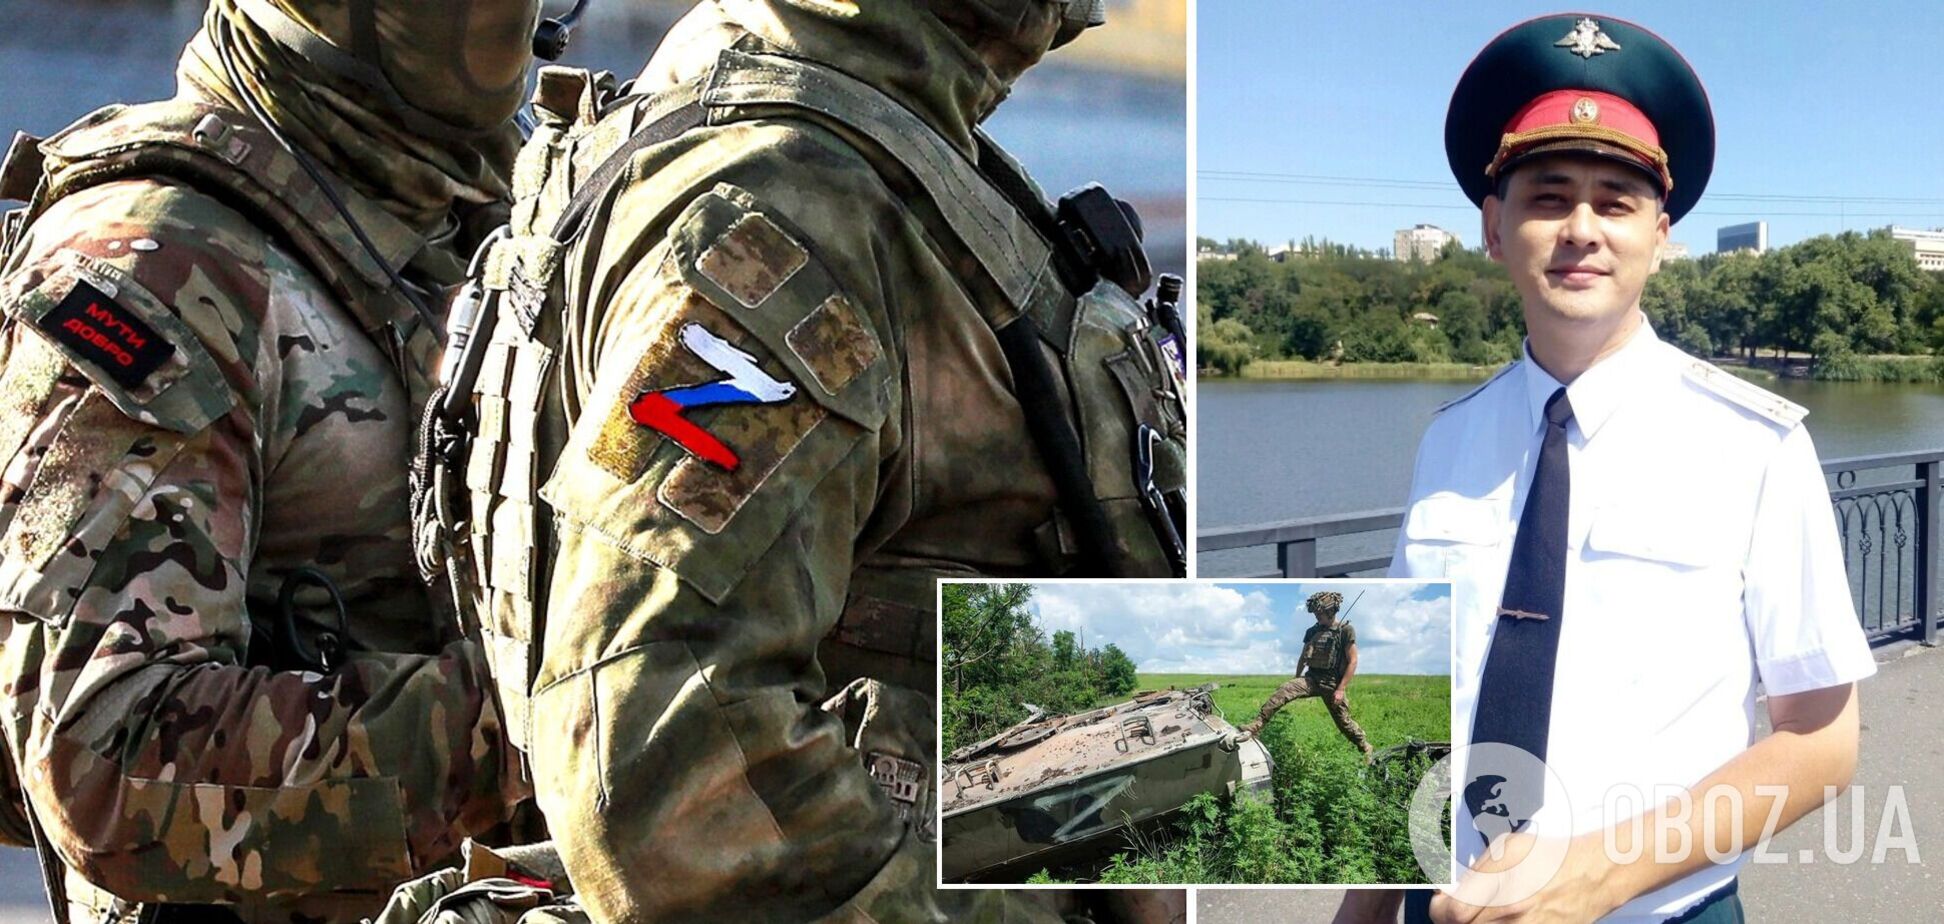 'Предателя догнала карма': ВСУ ликвидировали оккупанта из Донецка с позывным 'Кореец'. Фото